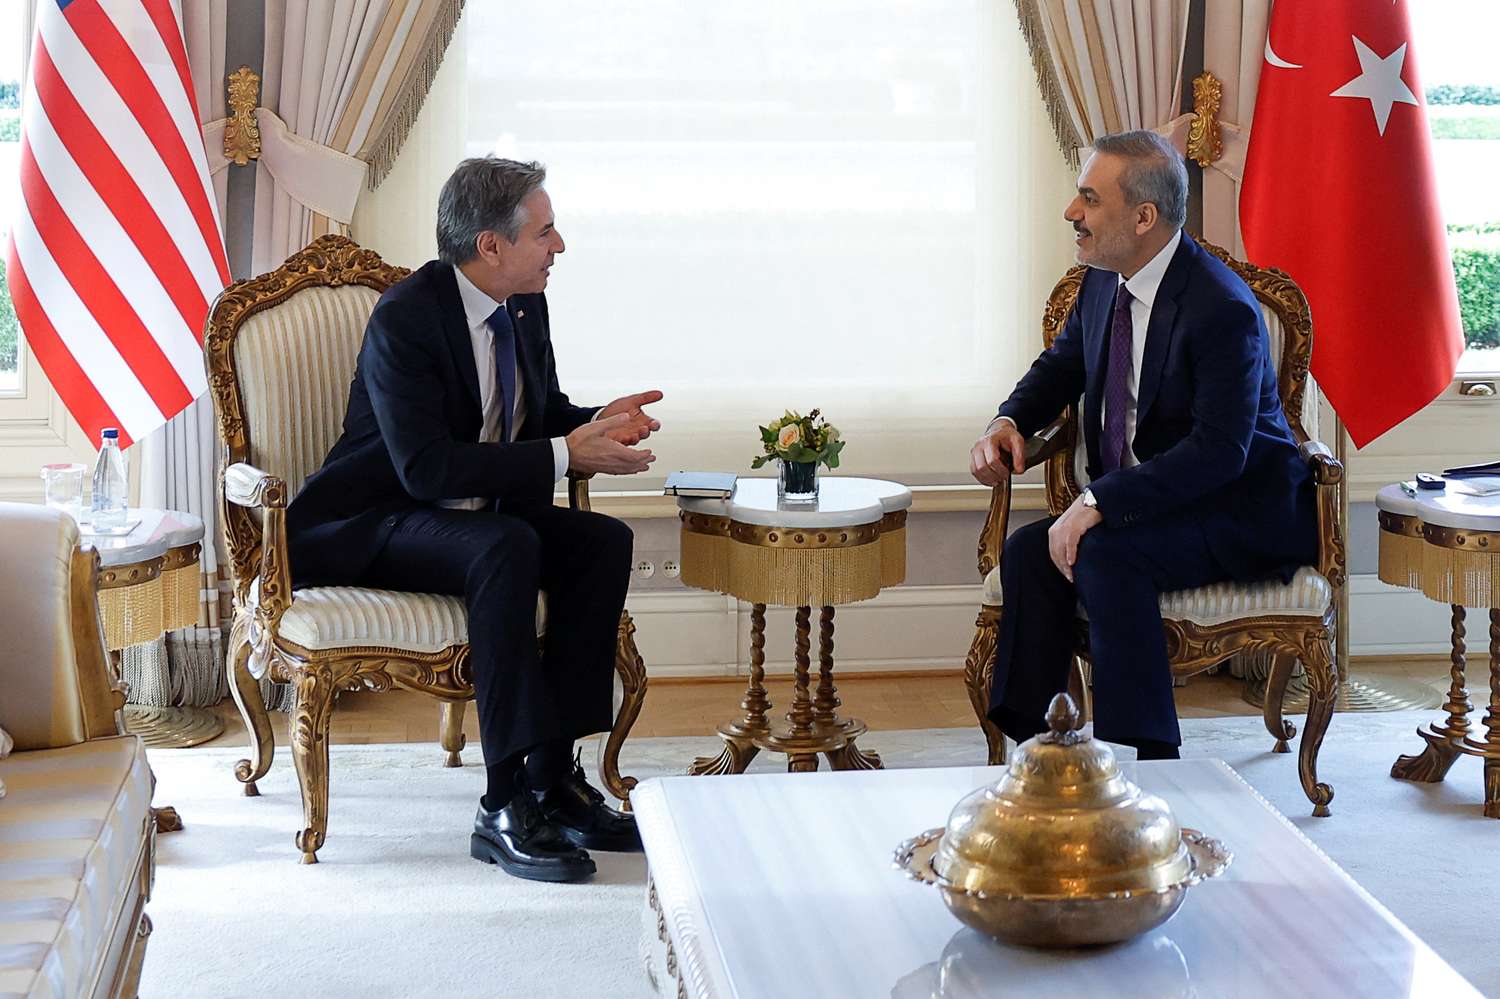 El Secretario de Estado de Estados Unidos, Antony Blinken, se reunió con el Ministro de Relaciones Exteriores turco, Hakan Fidan.